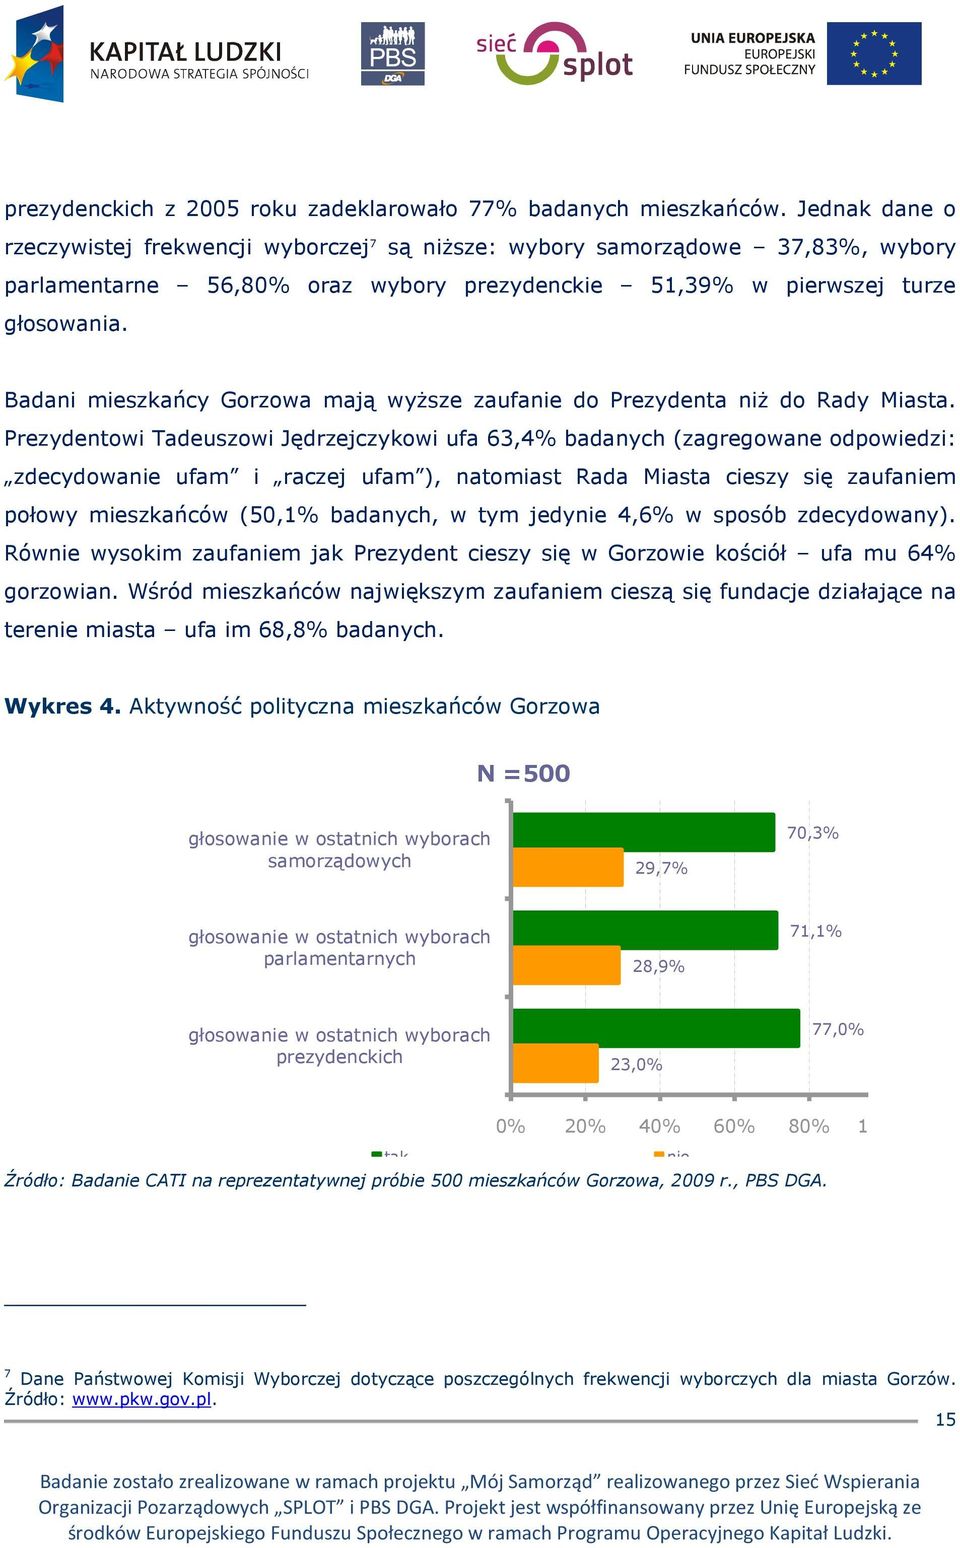 Badani mieszkańcy Gorzowa mają wyŝsze zaufanie do Prezydenta niŝ do Rady Miasta.